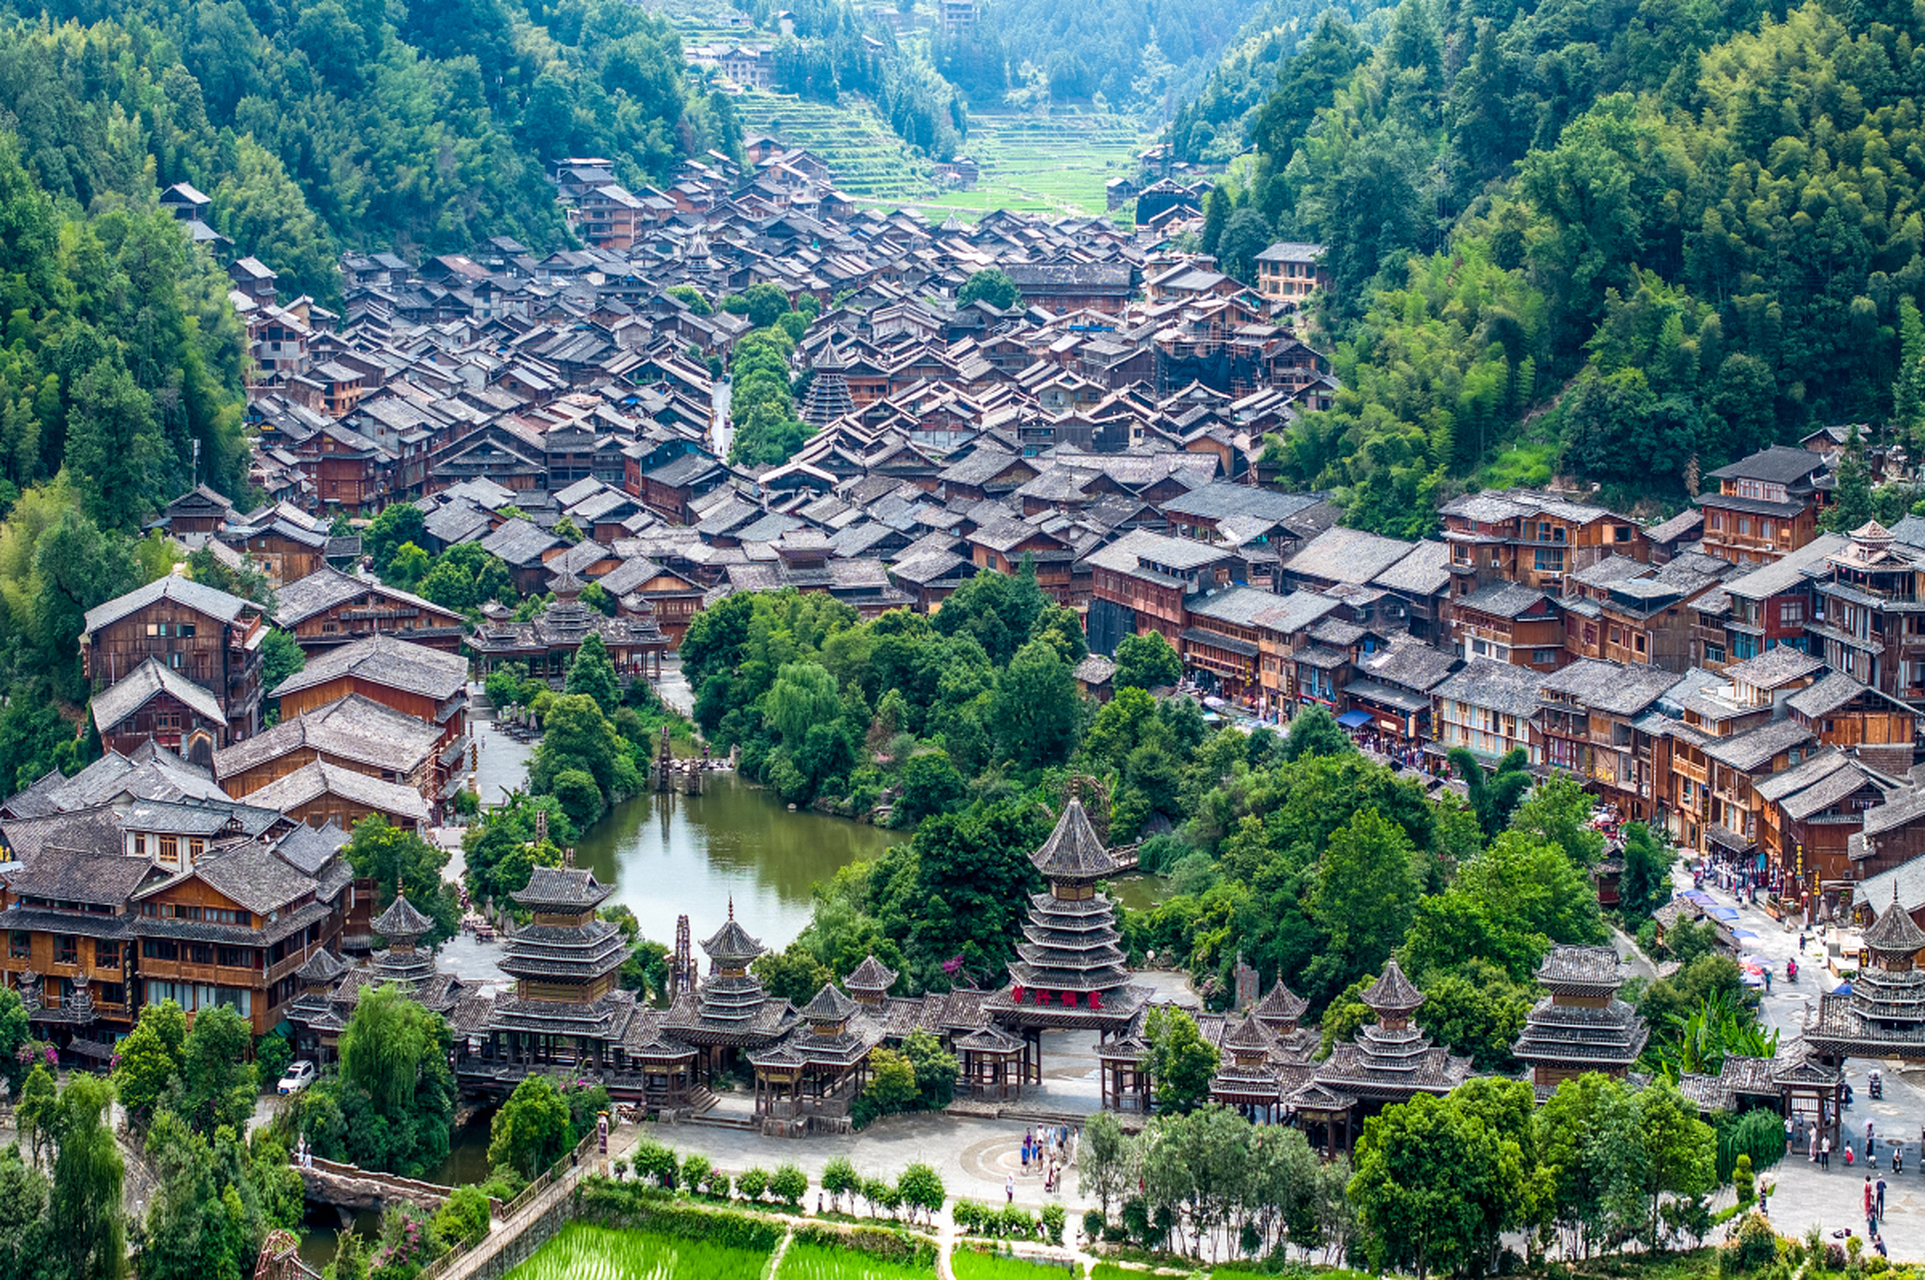 肇兴侗寨位于中国湖南省怀化市辰溪县,是一座历史悠久,风景秀丽的侗族